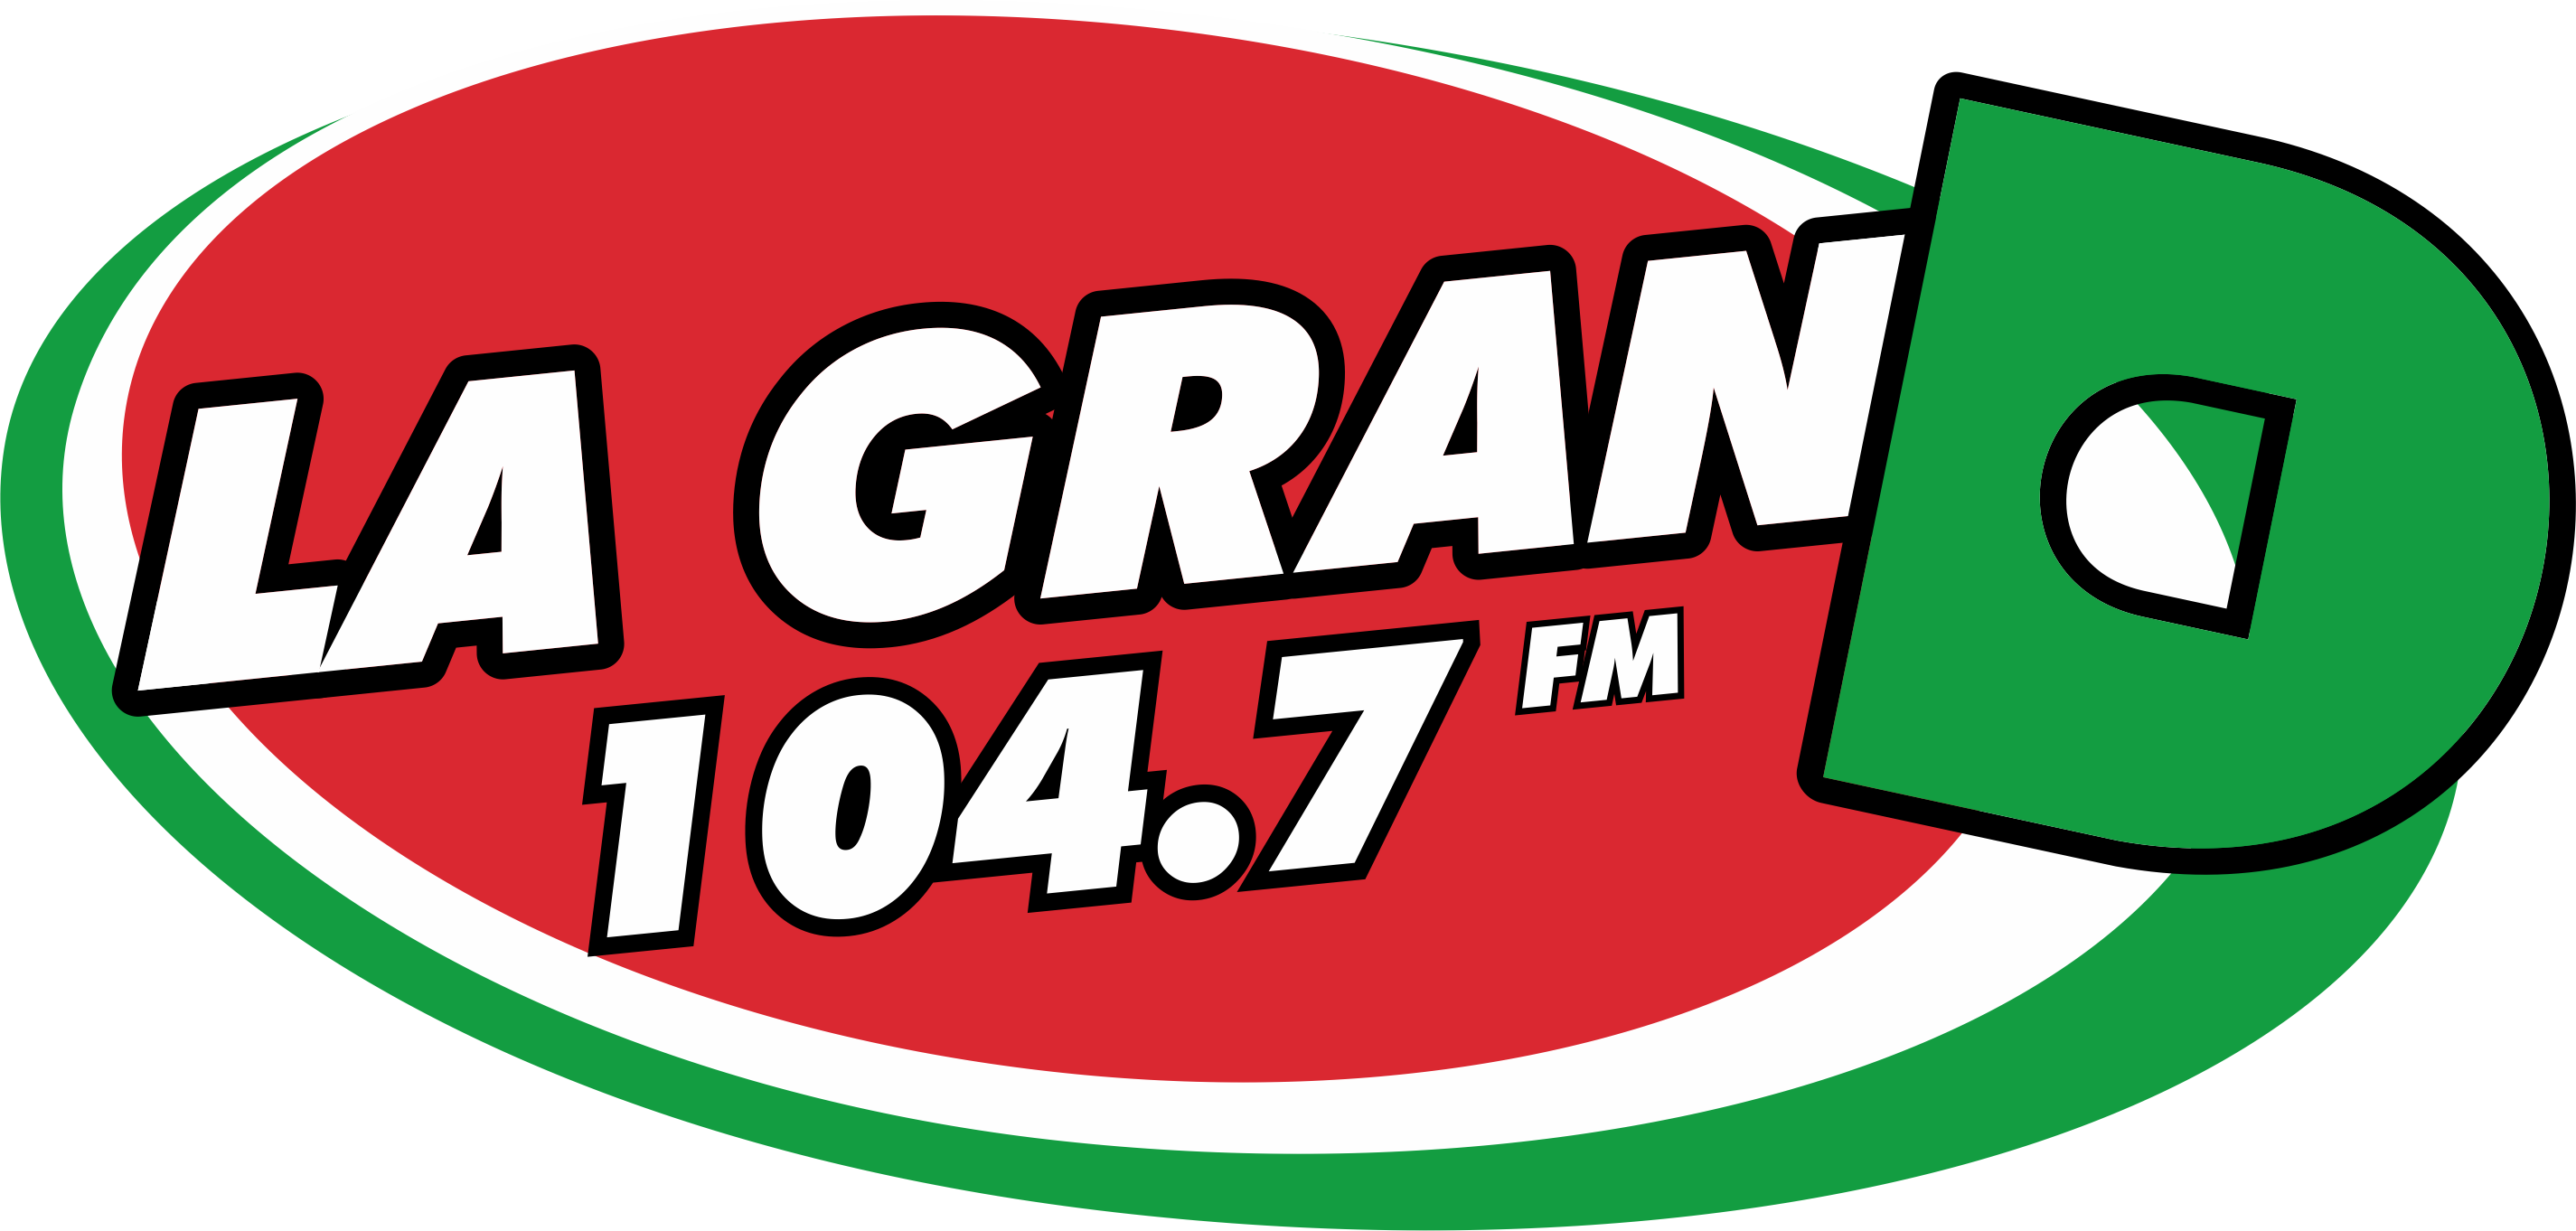 La Gran-D 104.7 FM